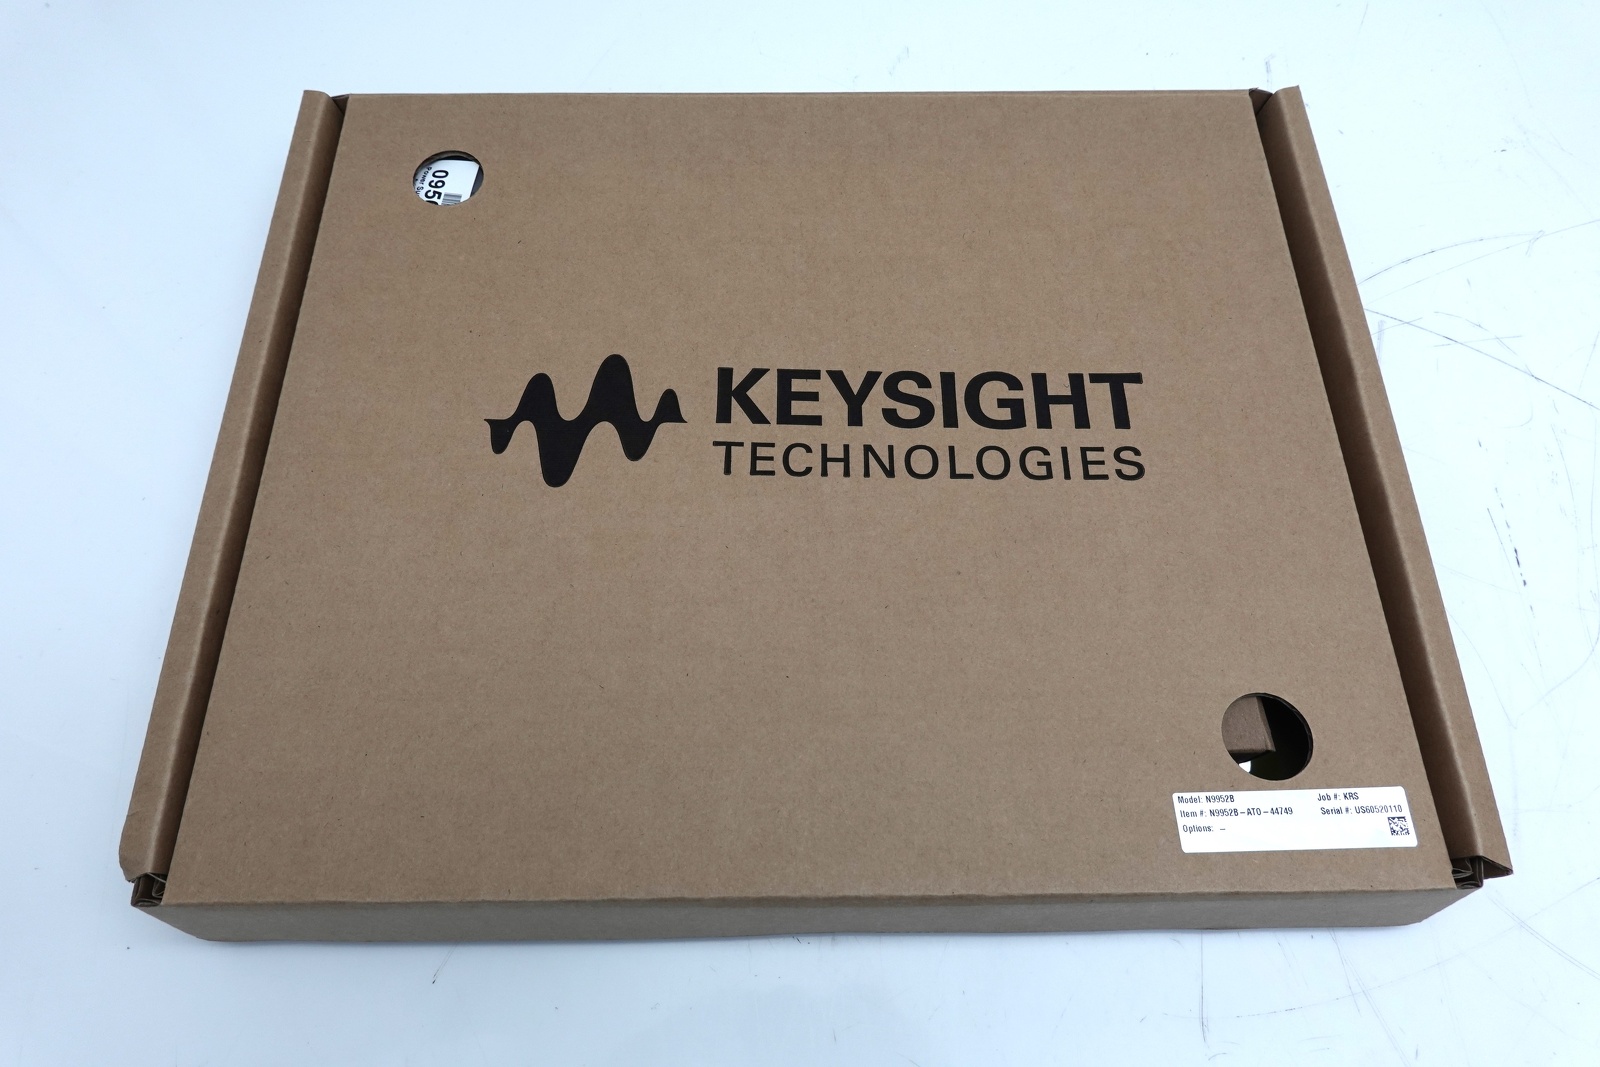 Keysight N9952B FieldFox Handheld Microwave Analyzer / 300 kHz to 50 GHz